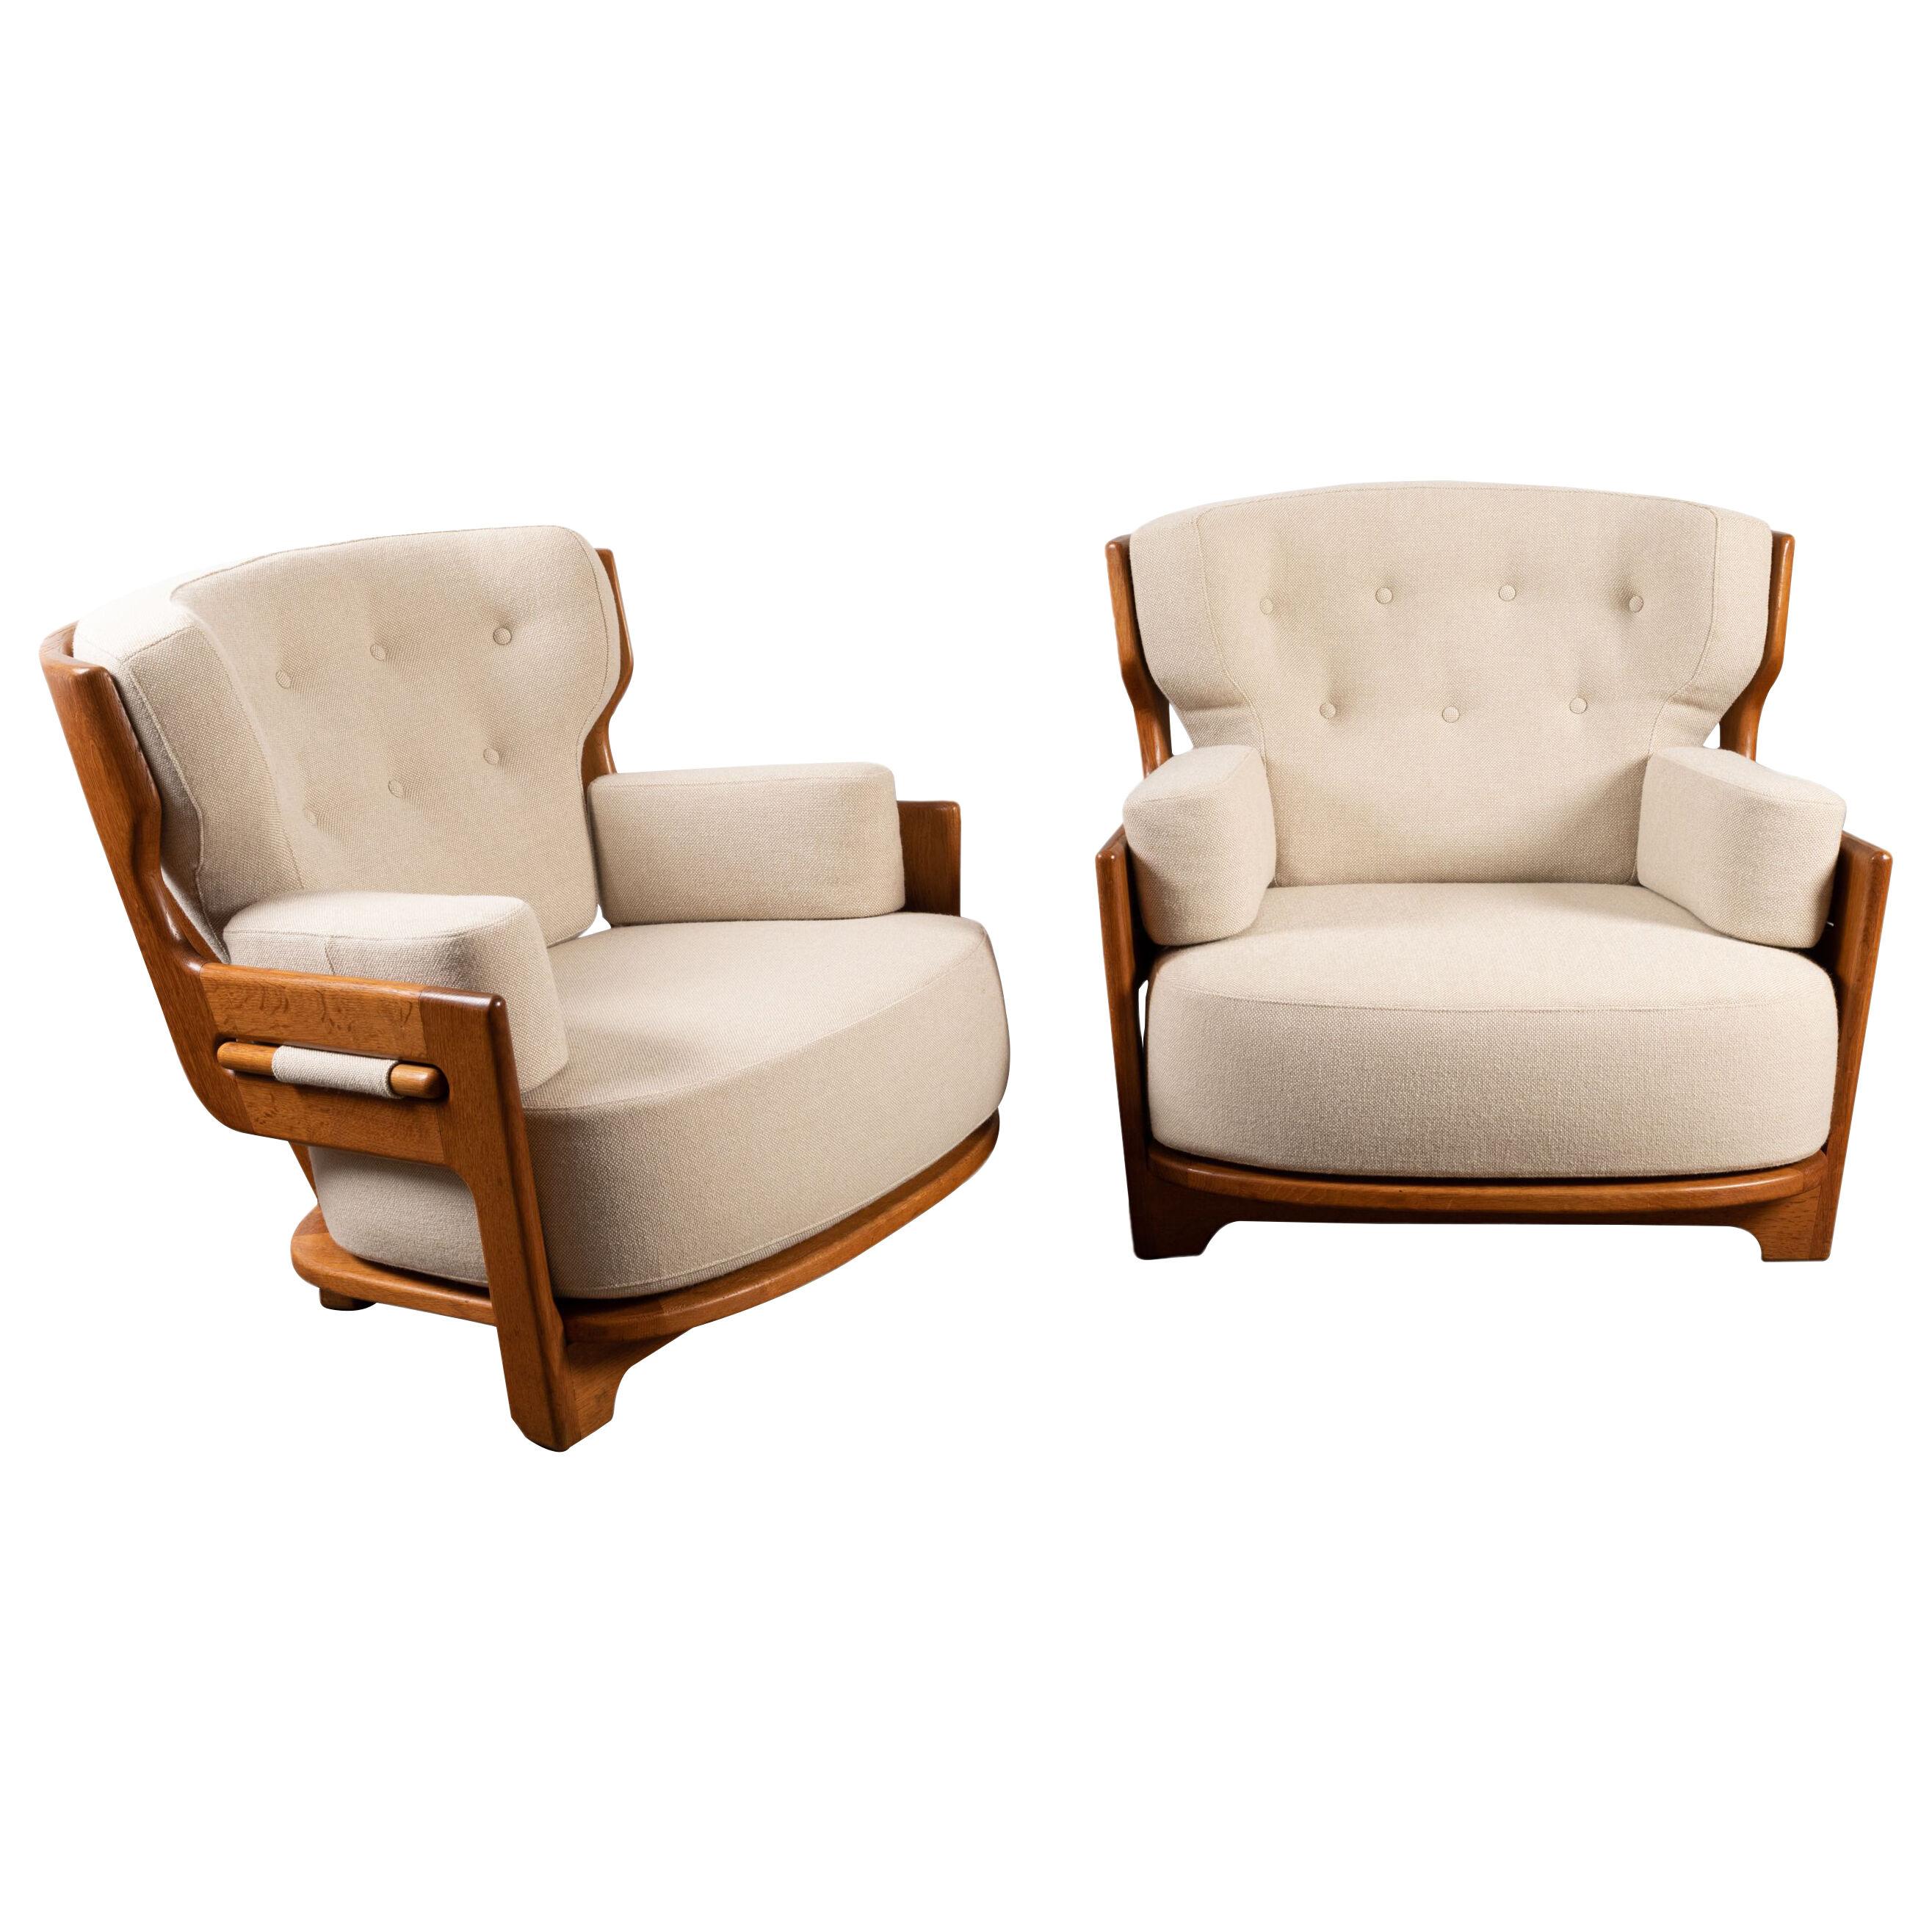 Pair of Large Oak Lounge Chairs, Guillerme et Chambron for "Votre maison"